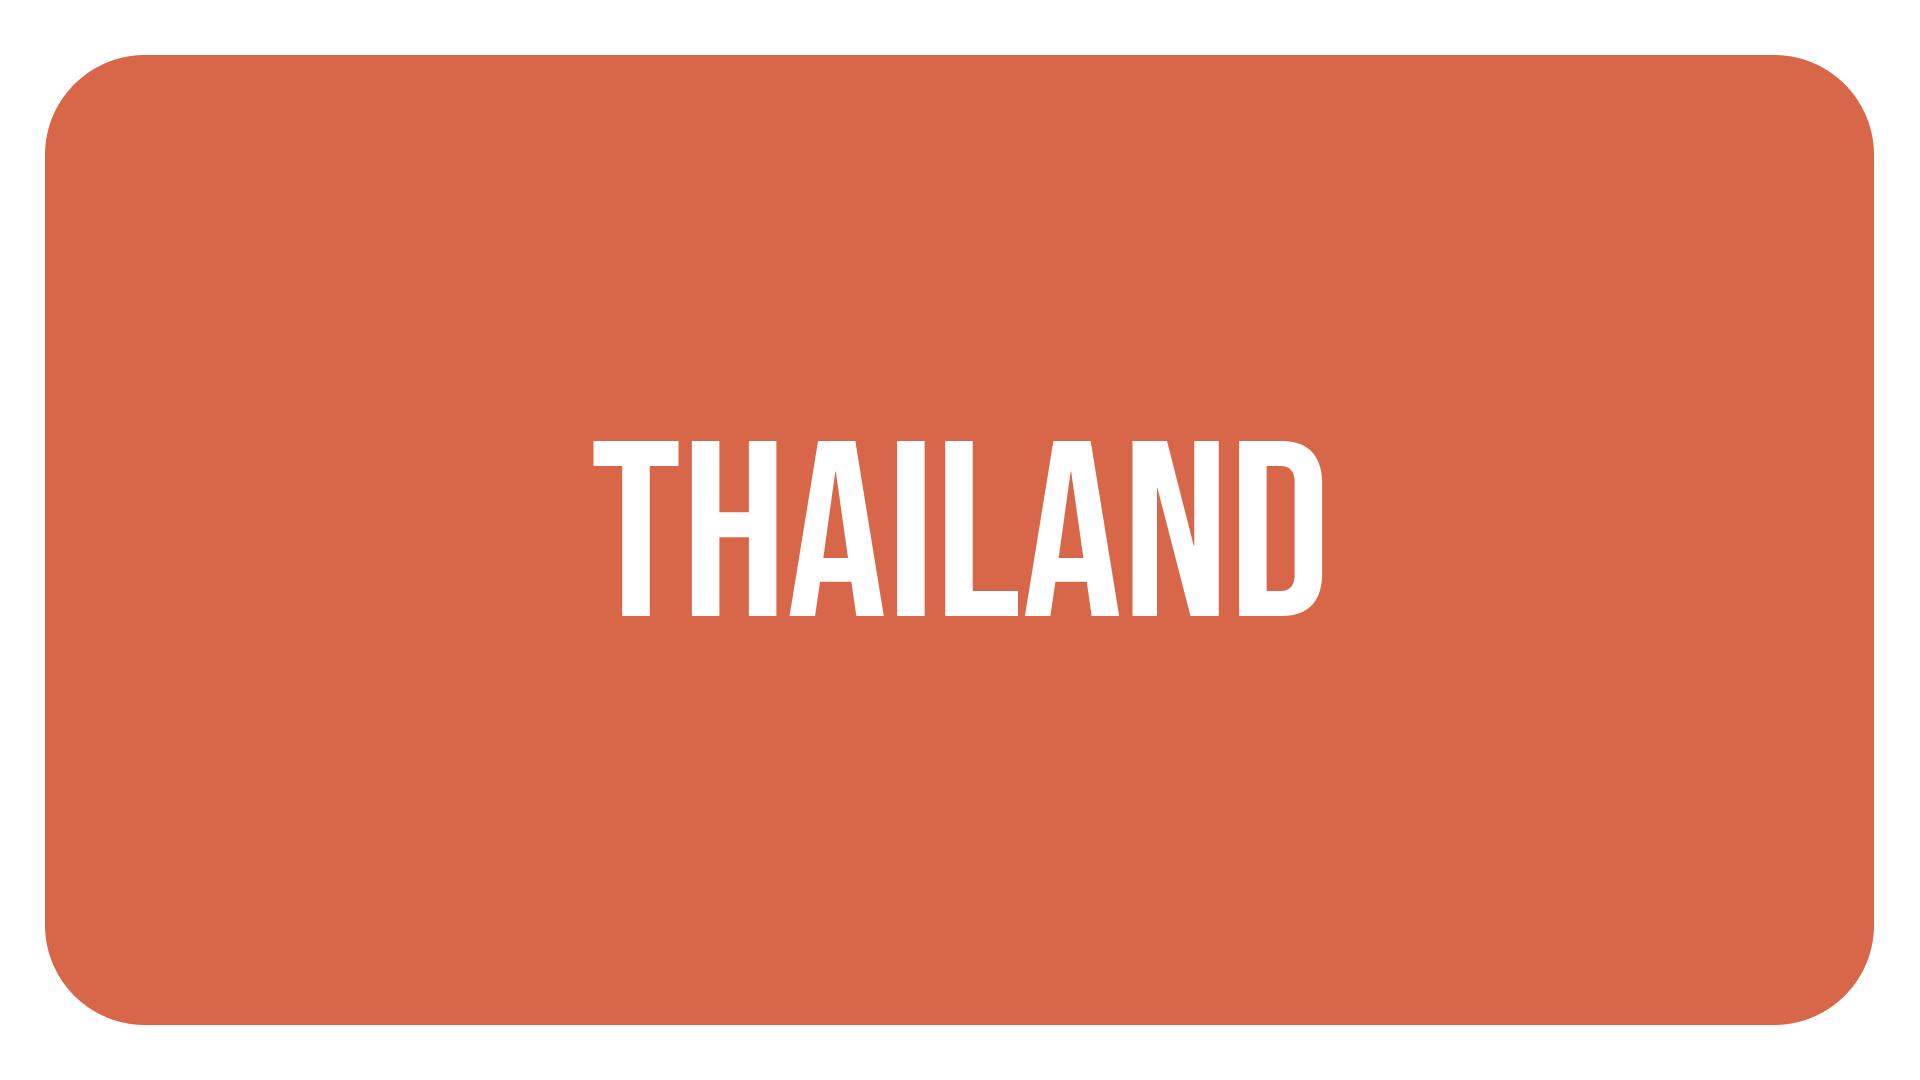 IMAGEN THAILAND